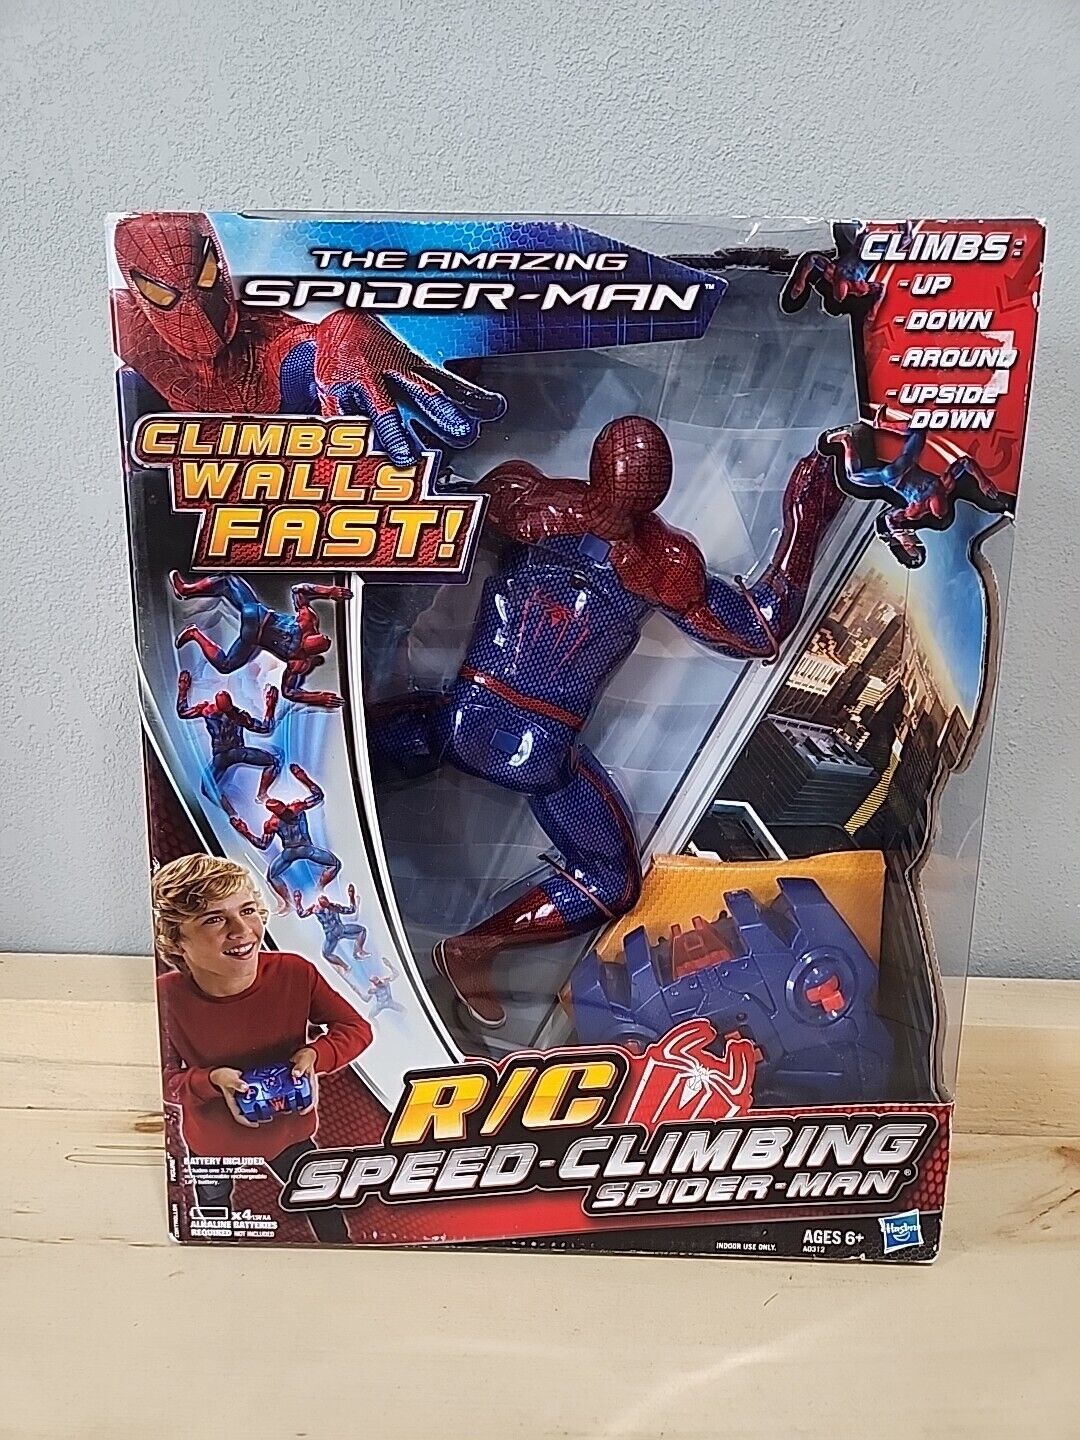 The Amazing Spider Man R/C Speed-Climbing Spider-Man Climbs Up Down Around NOB